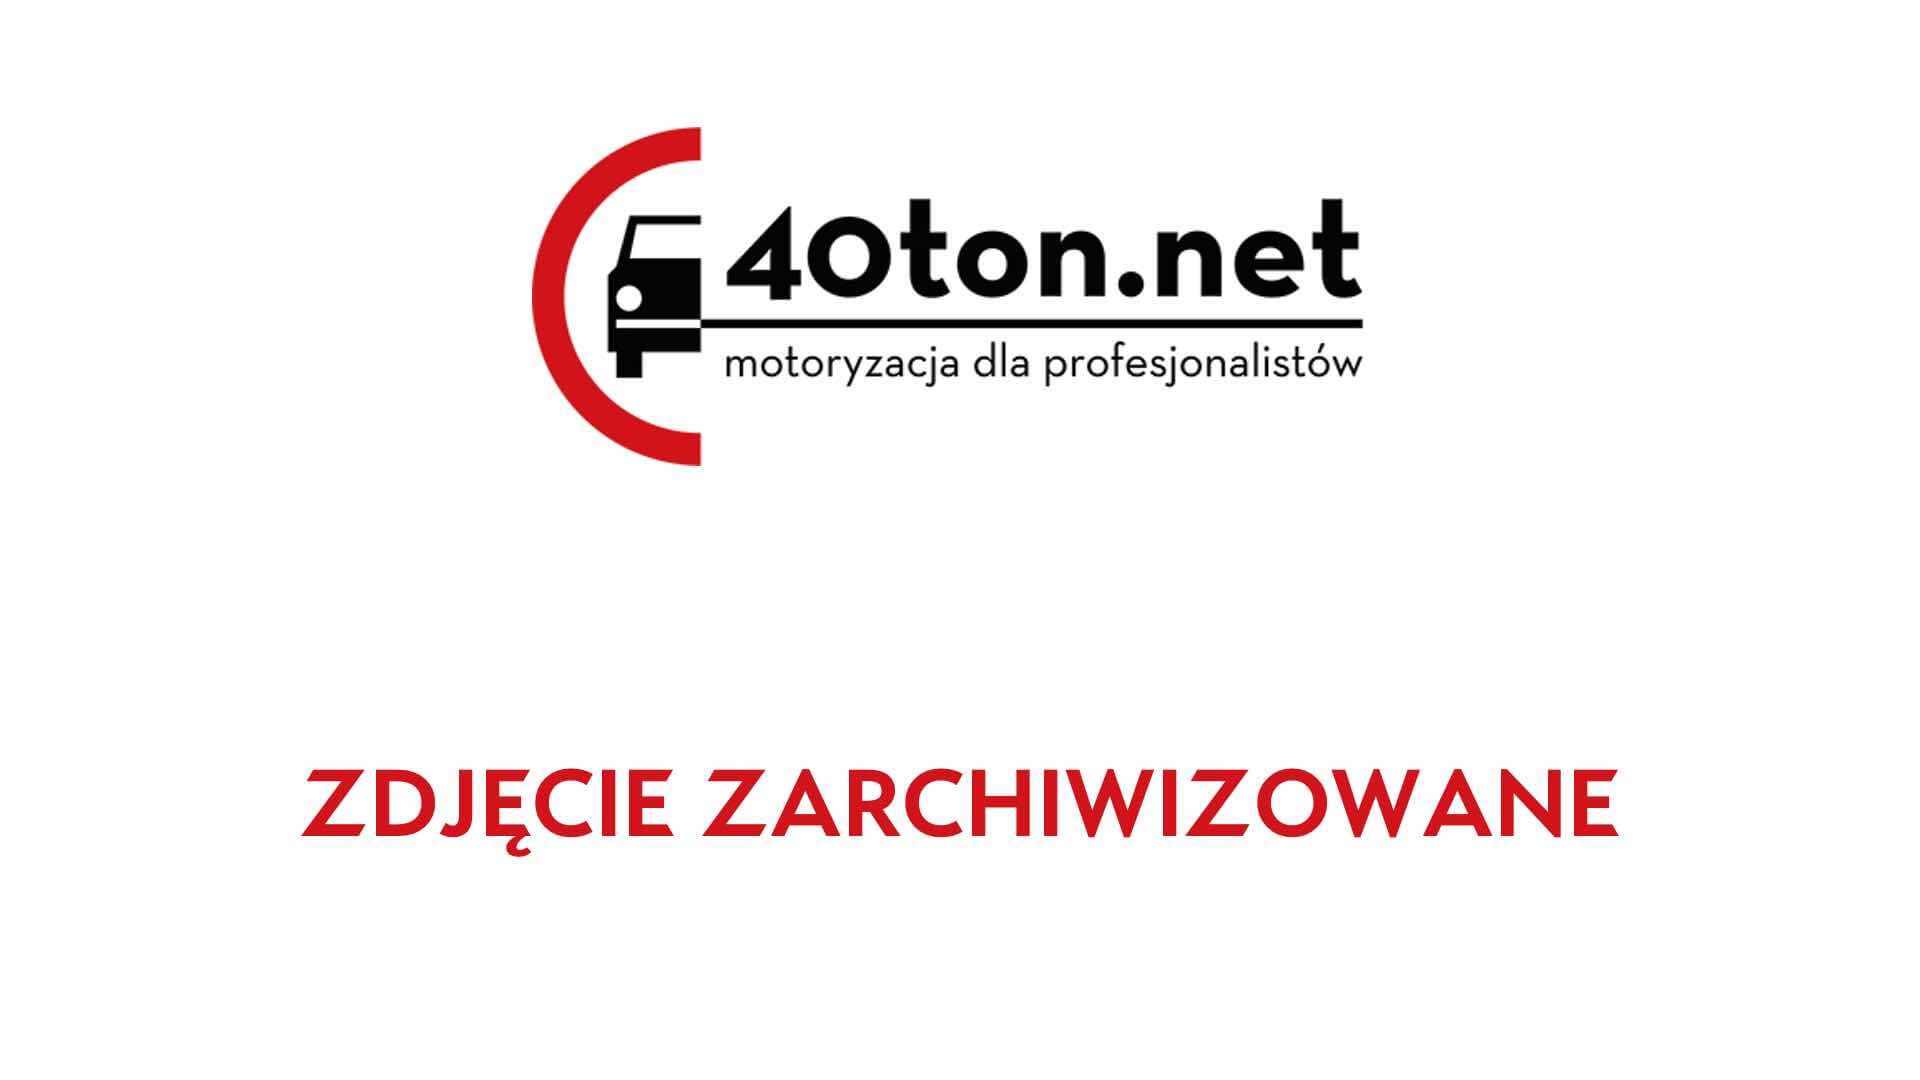 polskie_ciezarowki_40ton_truckspotters_1310